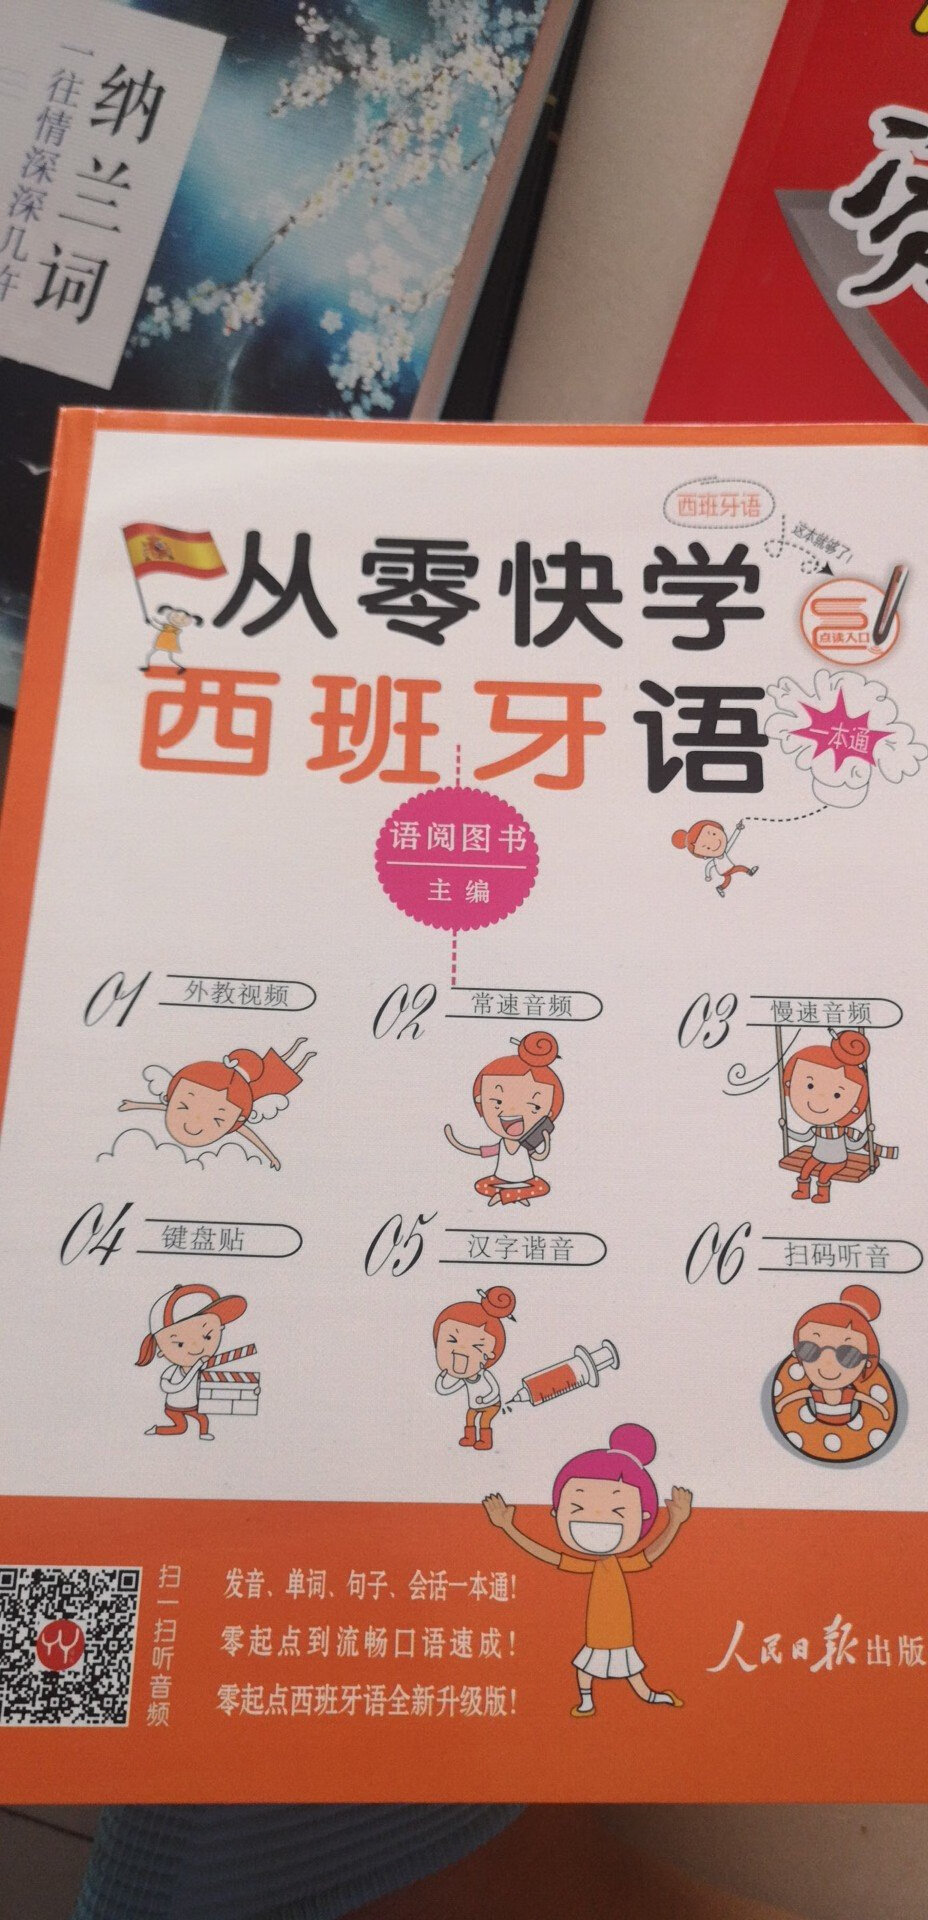 这本书有点搞笑，里面发音竟然是中文标注。跟着孩子完善自己。99十本，用券，差不多六院一本。快递快，服务好，支持。希望图书力度再法些，书买的多了，才可能多读些，于国民素质提升有很大好处啊。